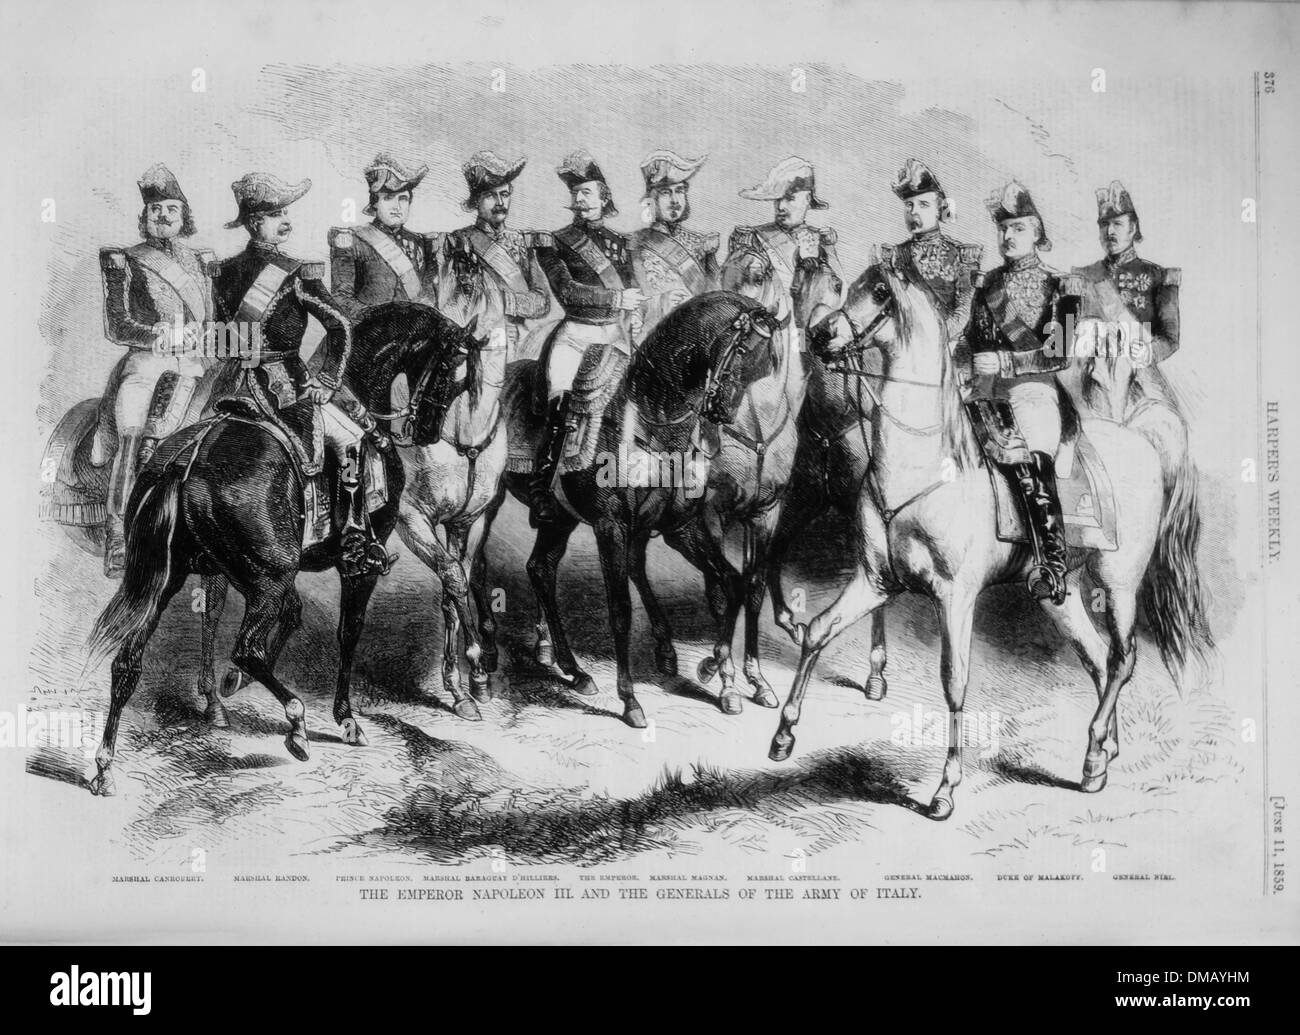 L'empereur Napoléon III et de généraux de l'armée d'Italie, gravure de Harper's Weekly, 1859 Banque D'Images